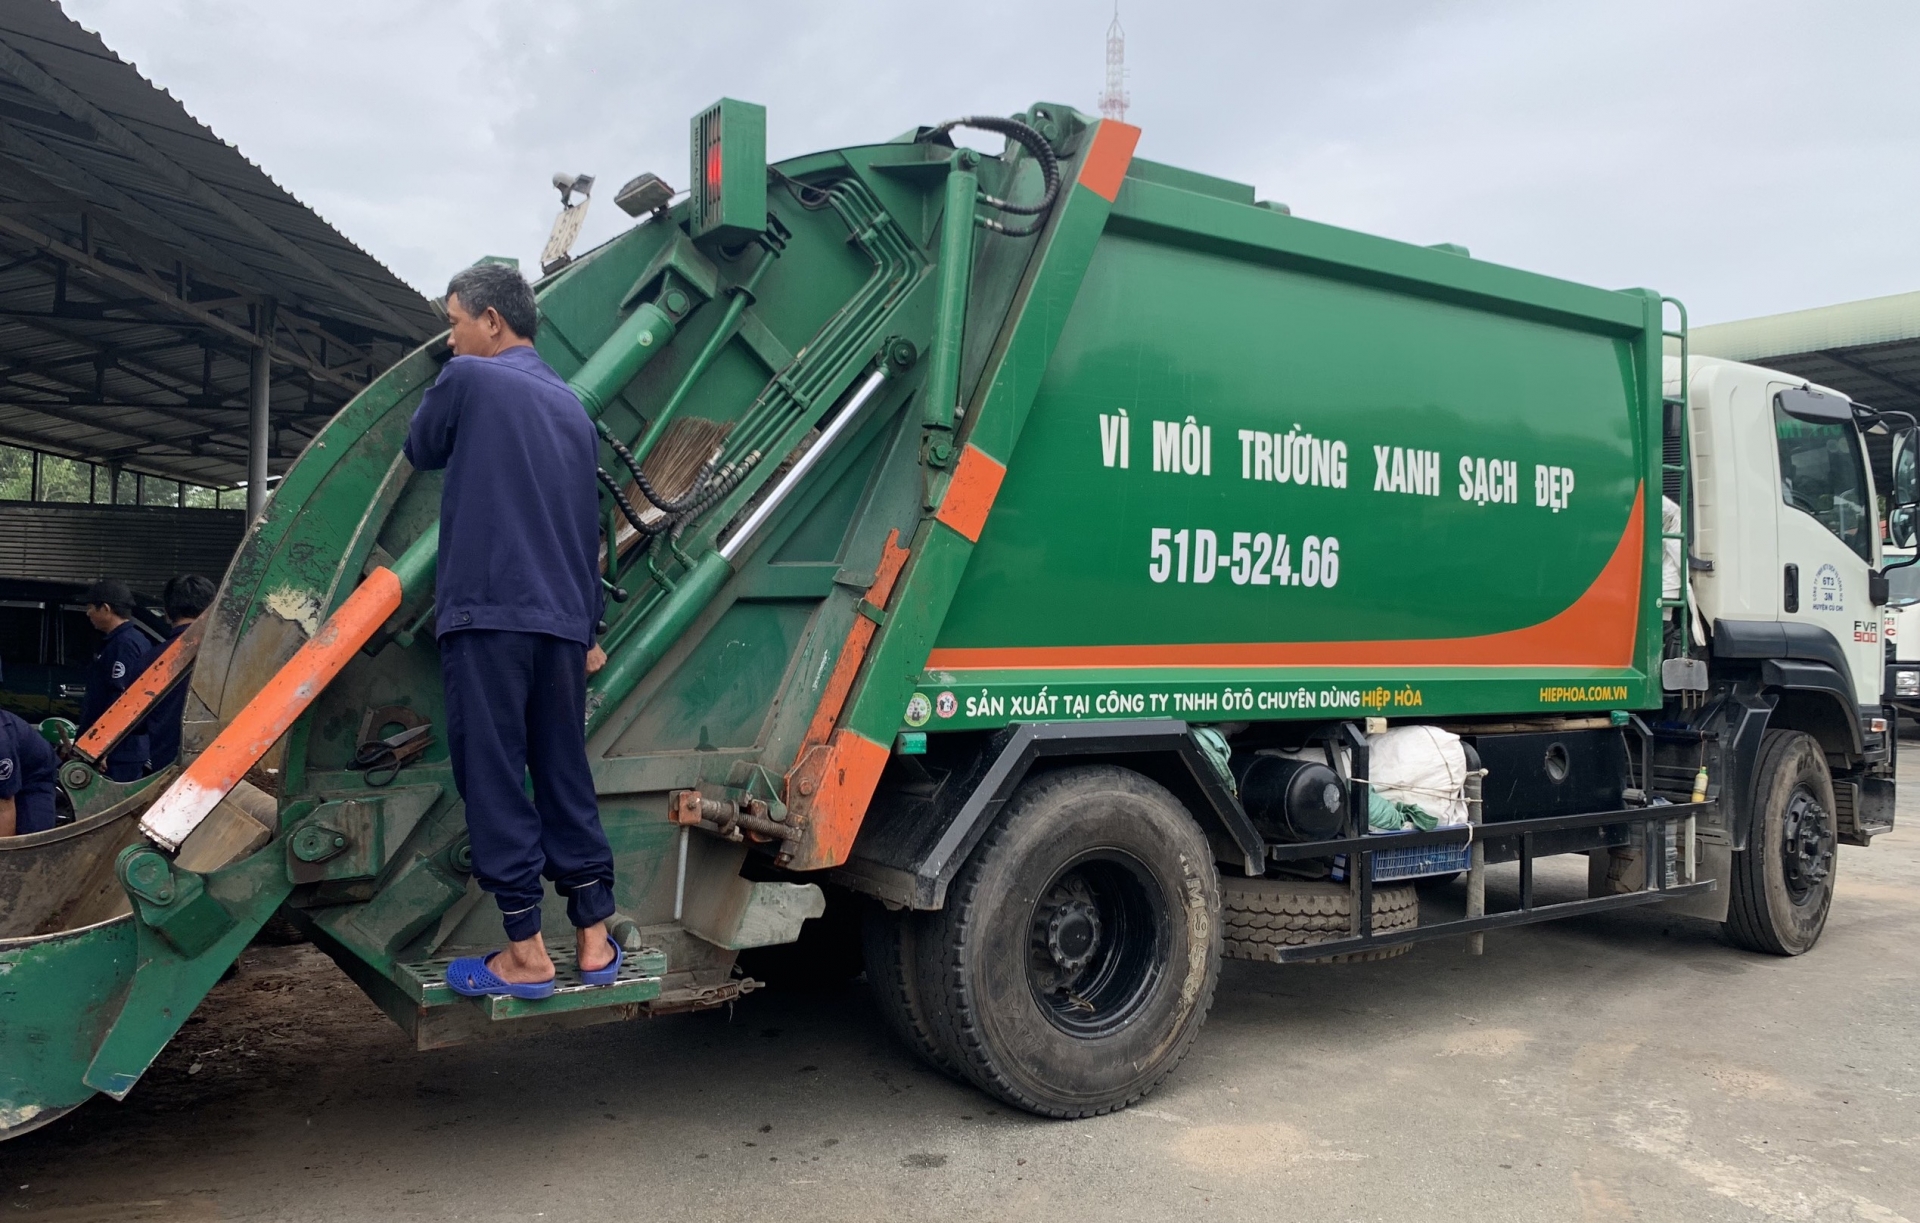 TP. Hồ Chí Minh: Tách chủ nguồn thải là doanh nghiệp để áp giá dịch vụ môi trường riêng